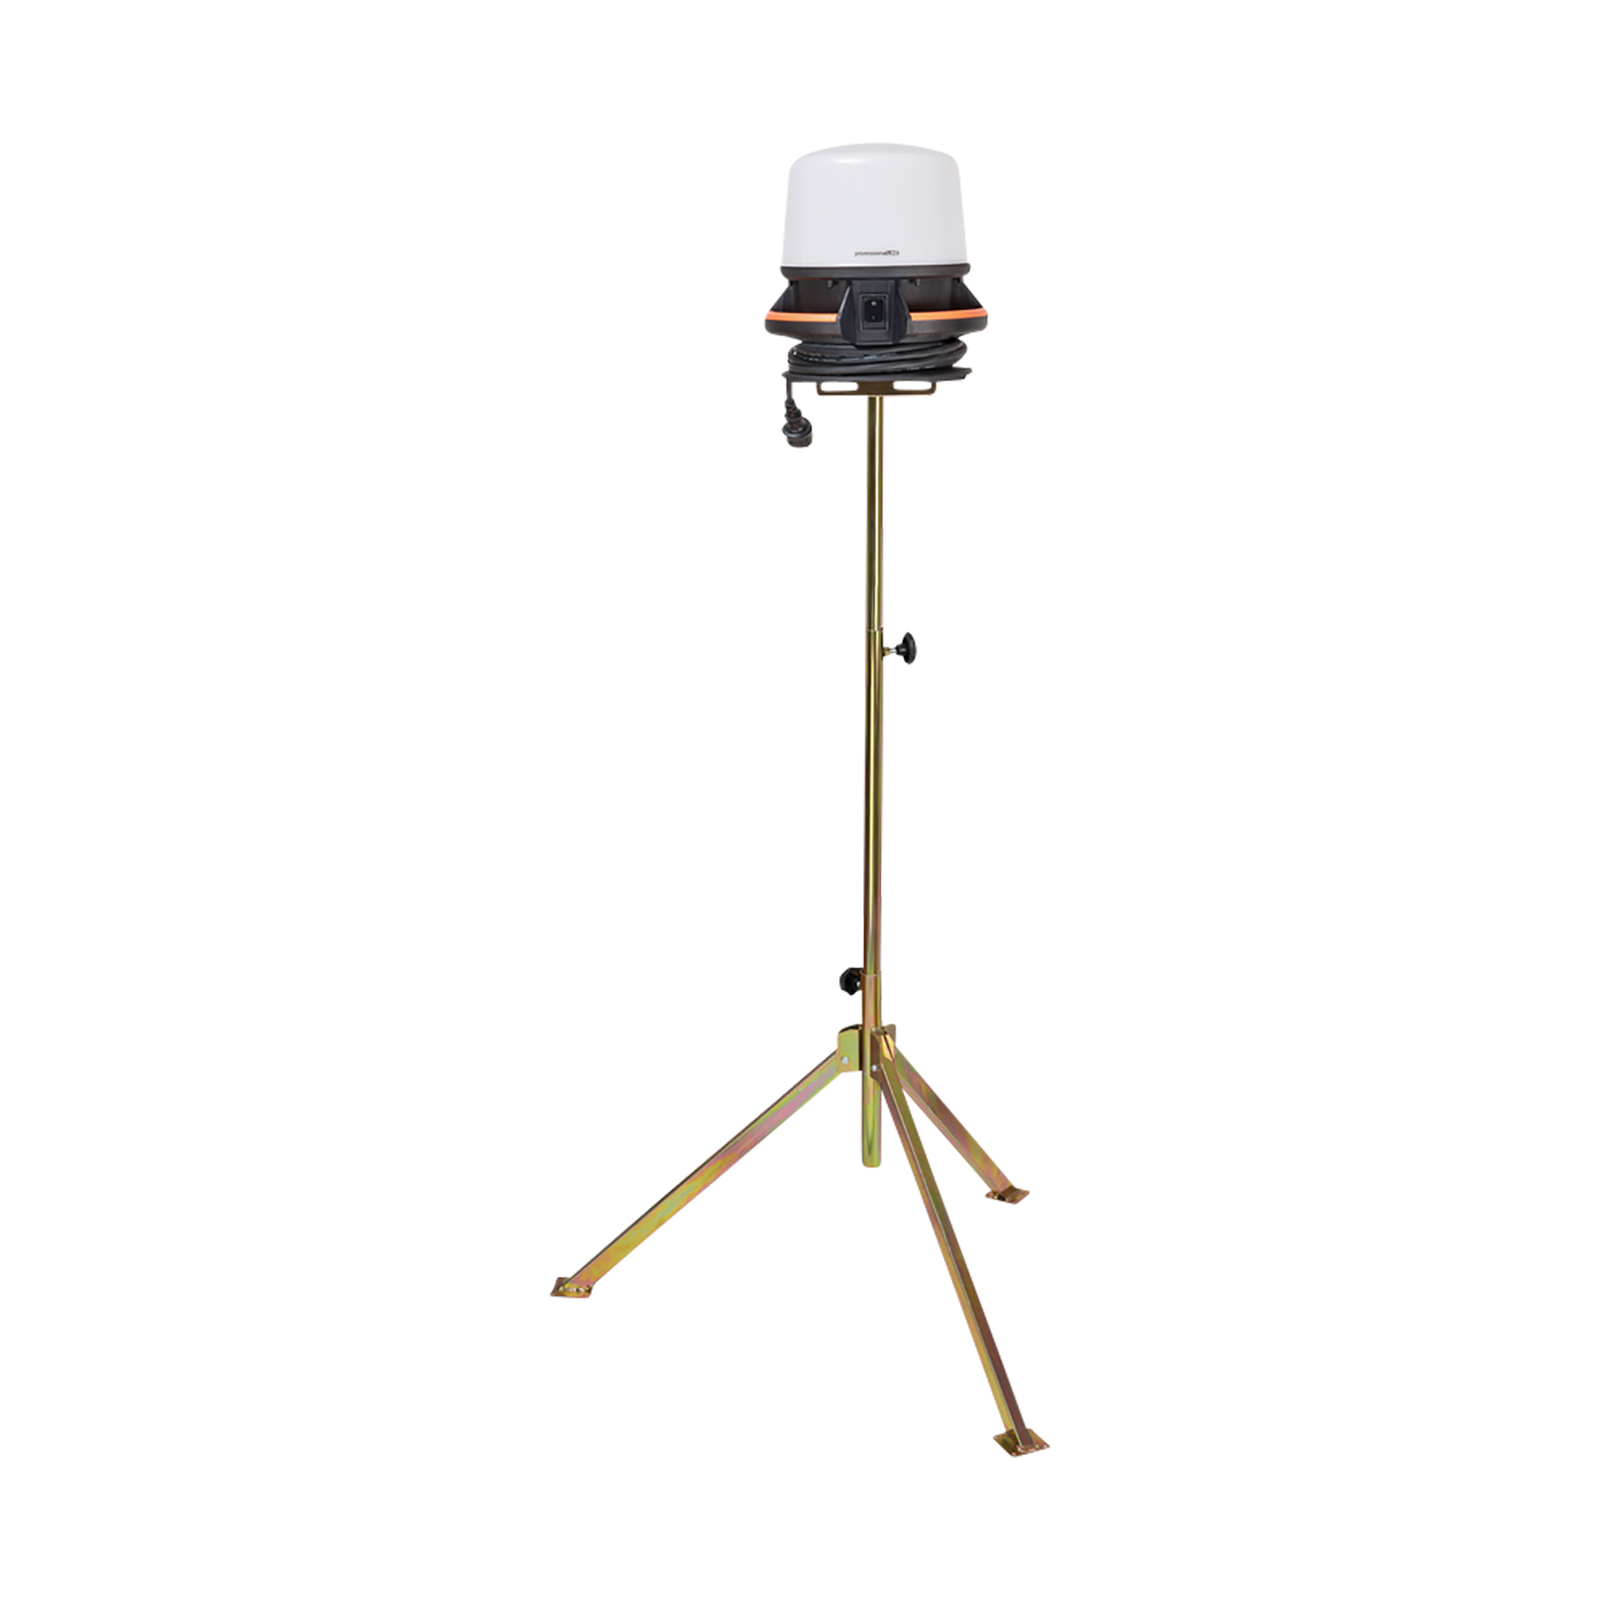 Pracovný LED reflektor ORUM 5050 M 360° + zásuvka